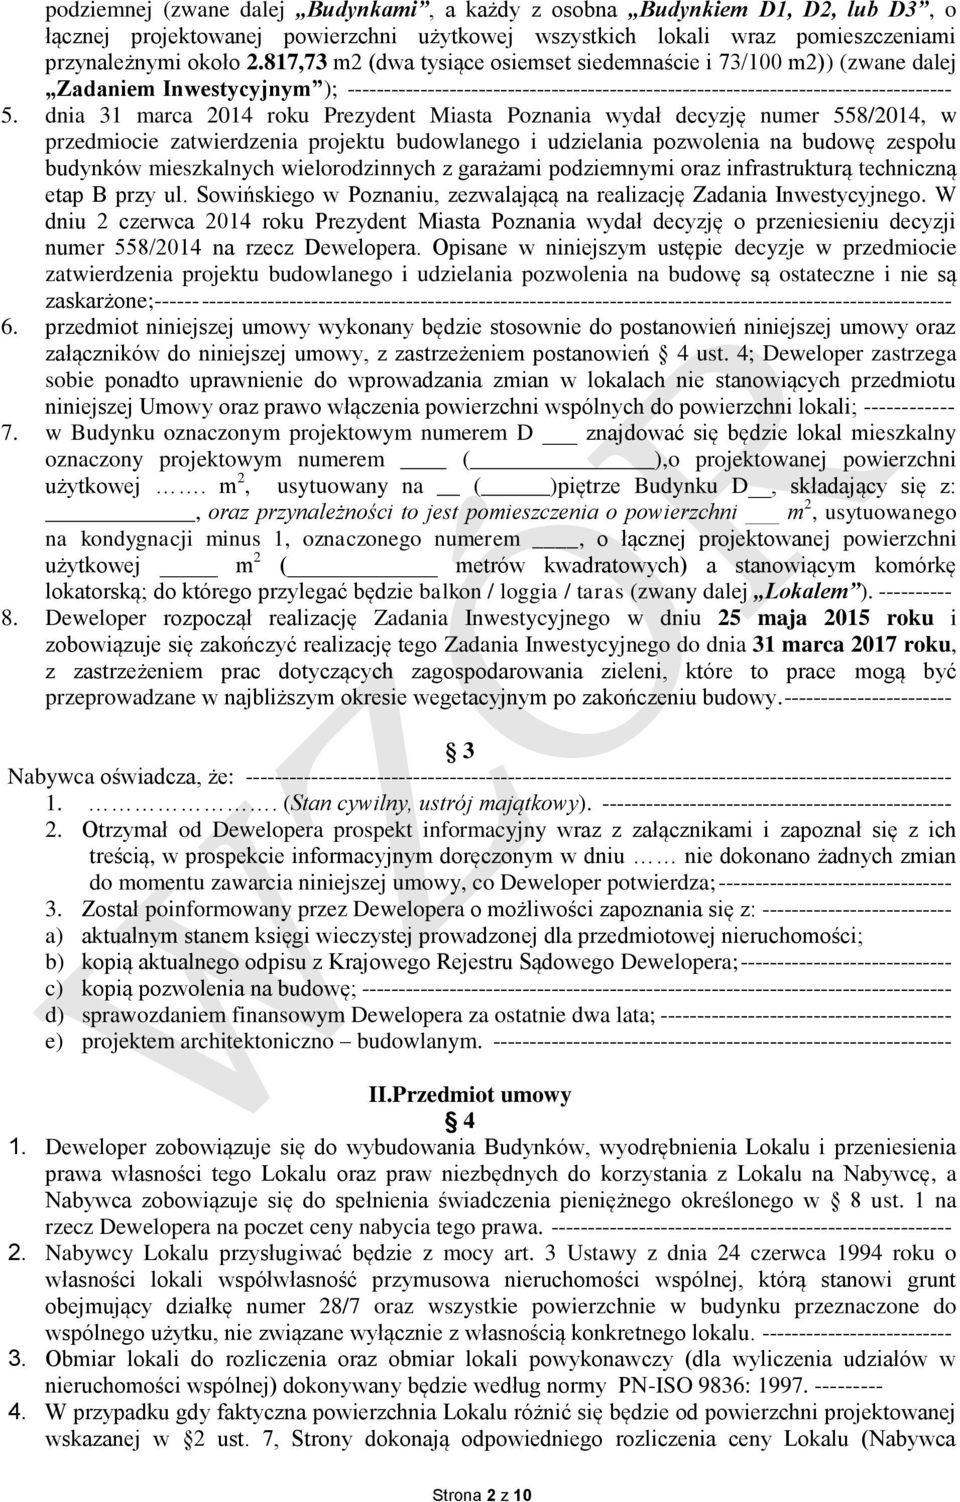 dnia 31 marca 2014 roku Prezydent Miasta Poznania wydał decyzję numer 558/2014, w przedmiocie zatwierdzenia projektu budowlanego i udzielania pozwolenia na budowę zespołu budynków mieszkalnych